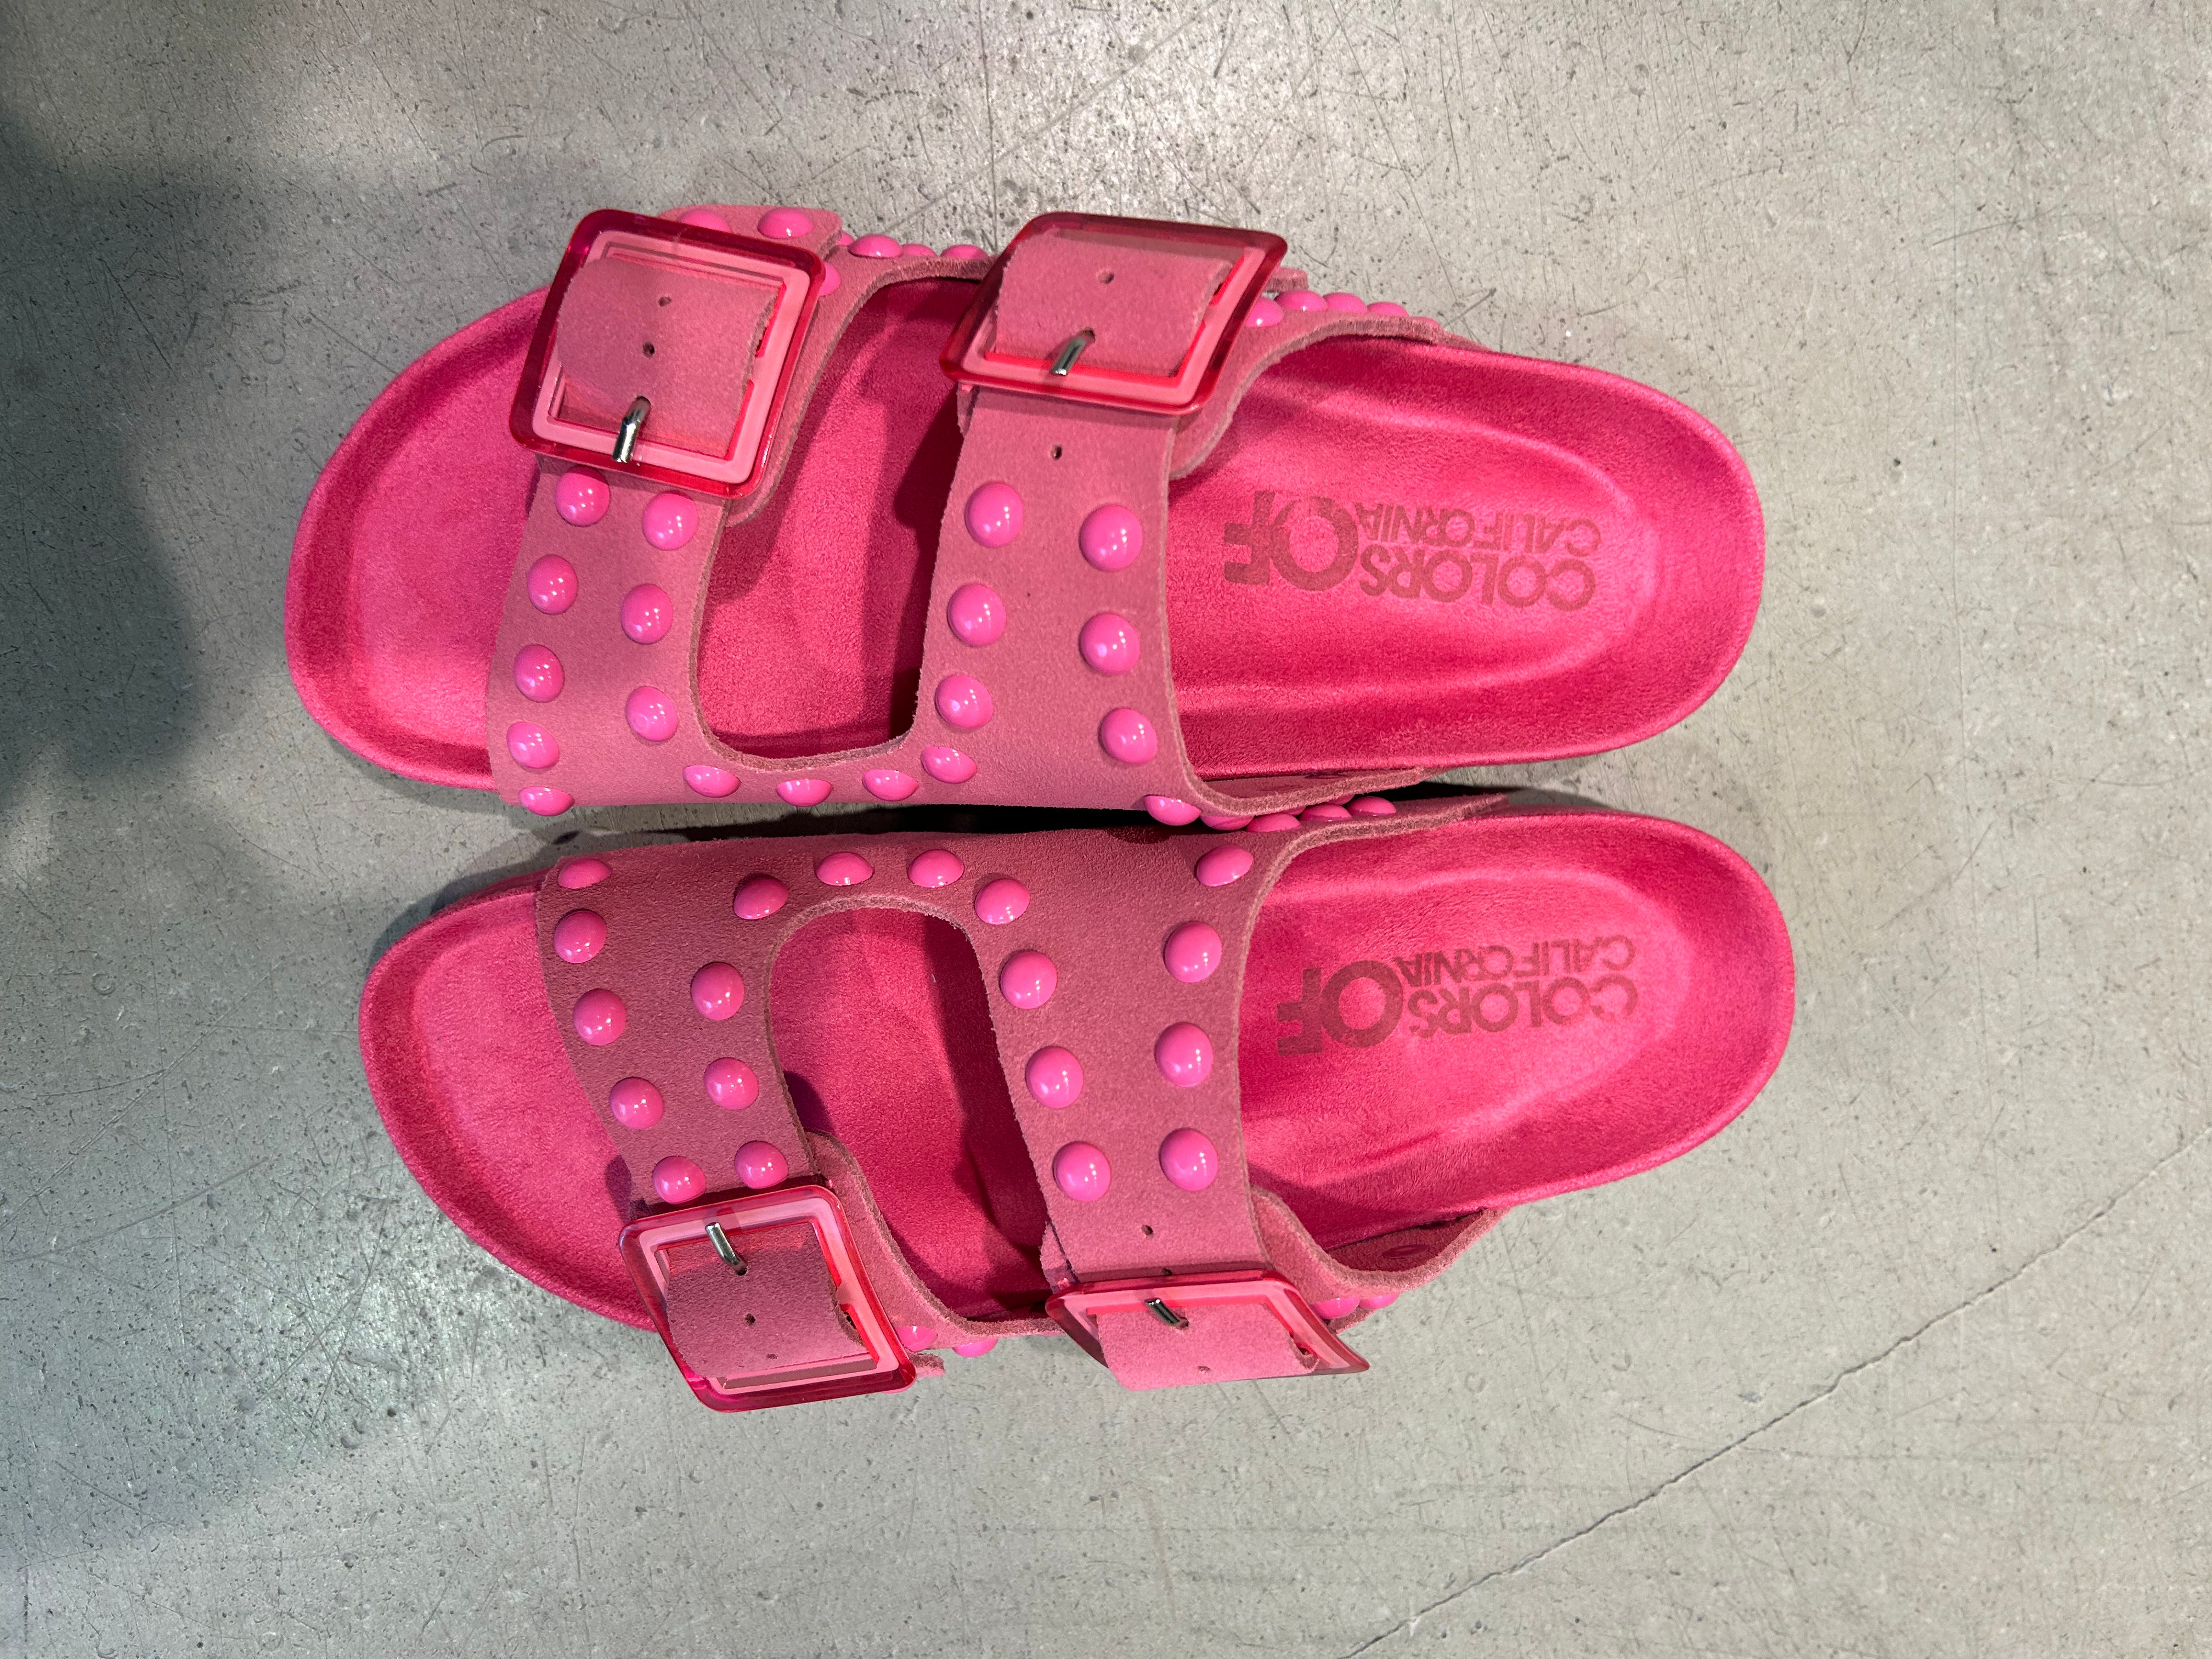 Schuhe Colours of pink Nieten